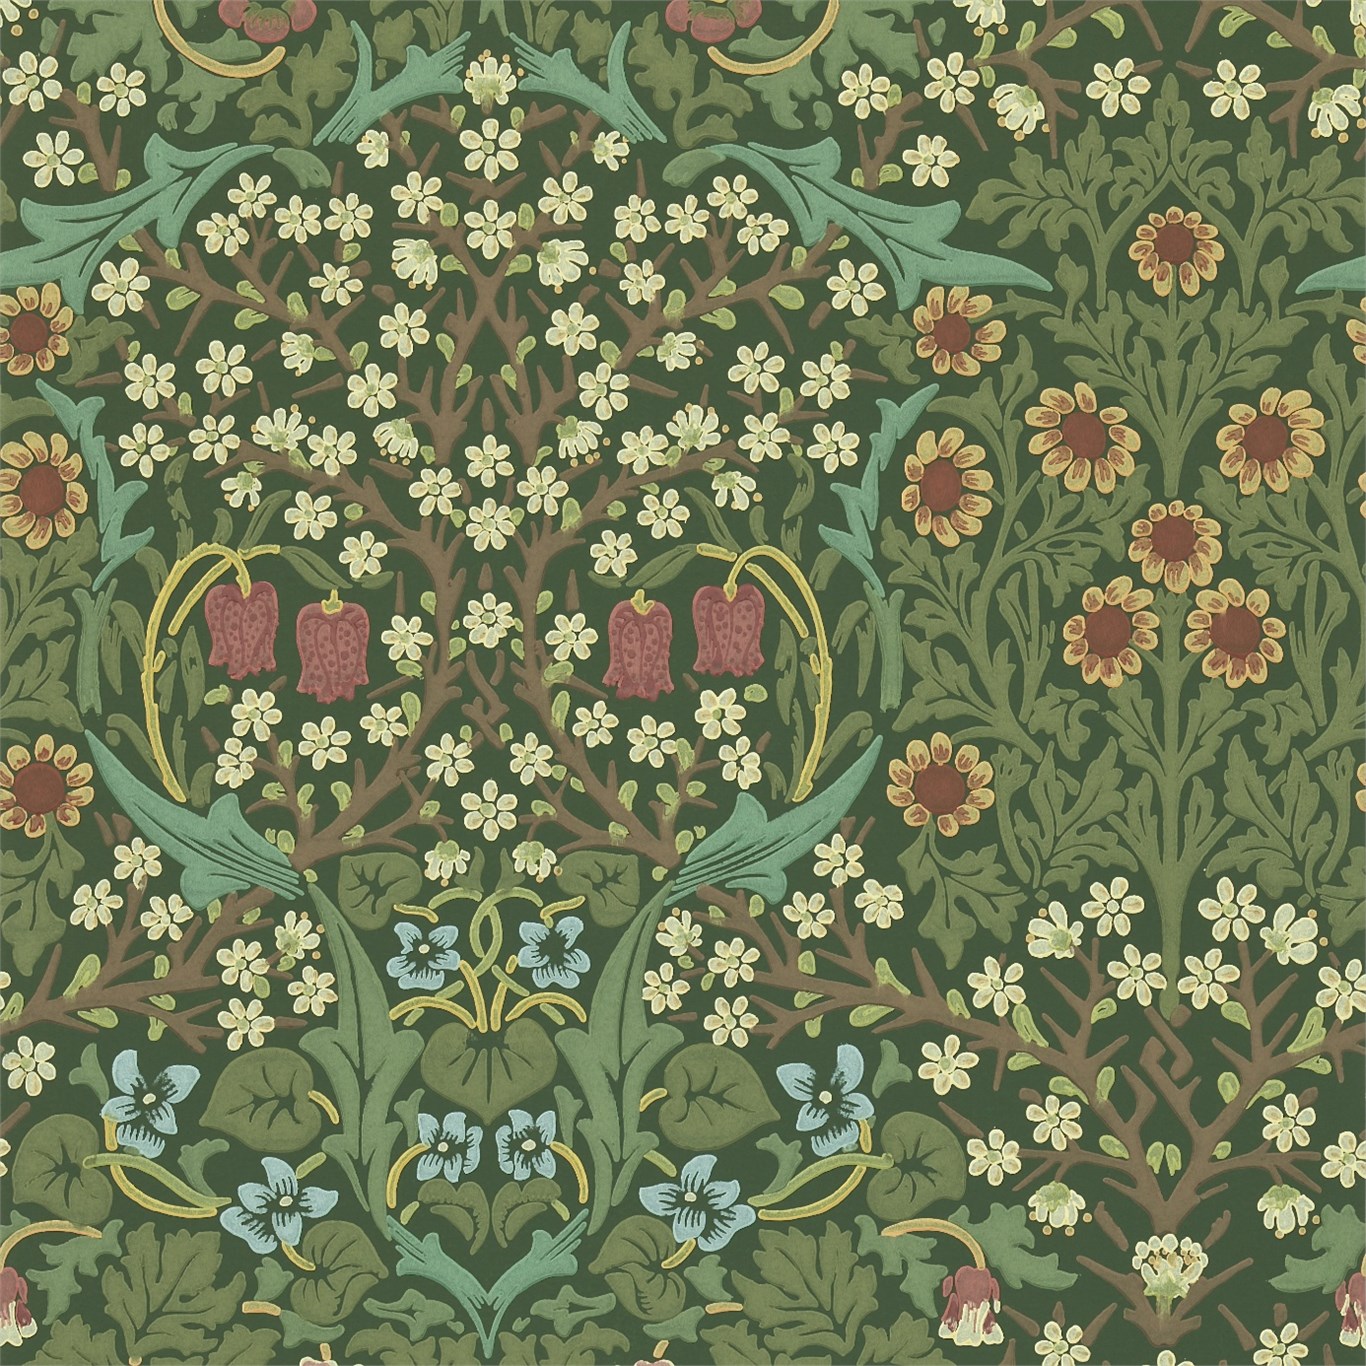 The Original Morris Co Arts And Crafts Fabrics Wallpaper